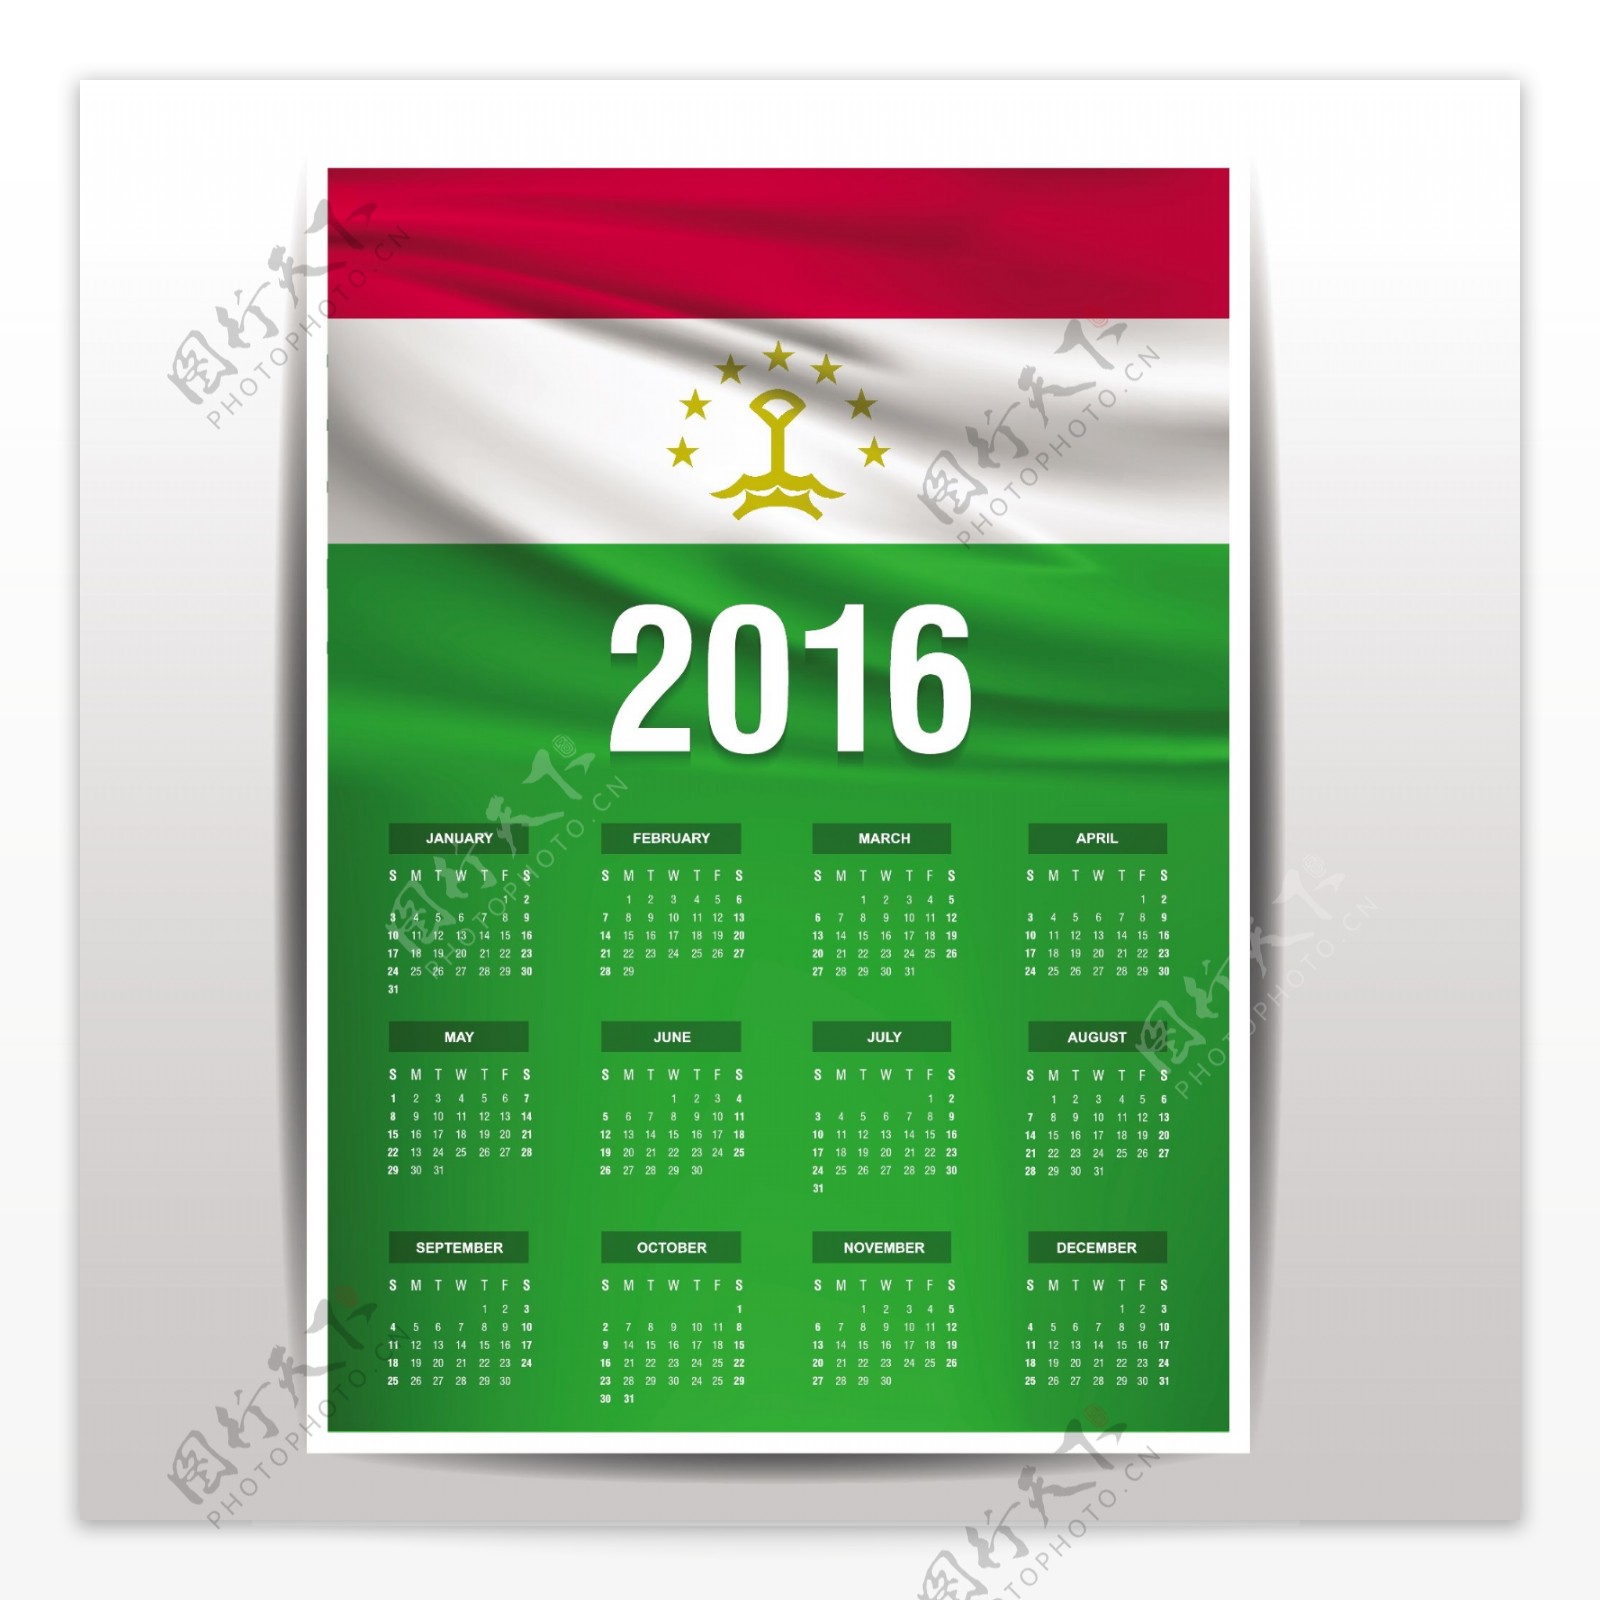 2016塔吉克斯坦日历